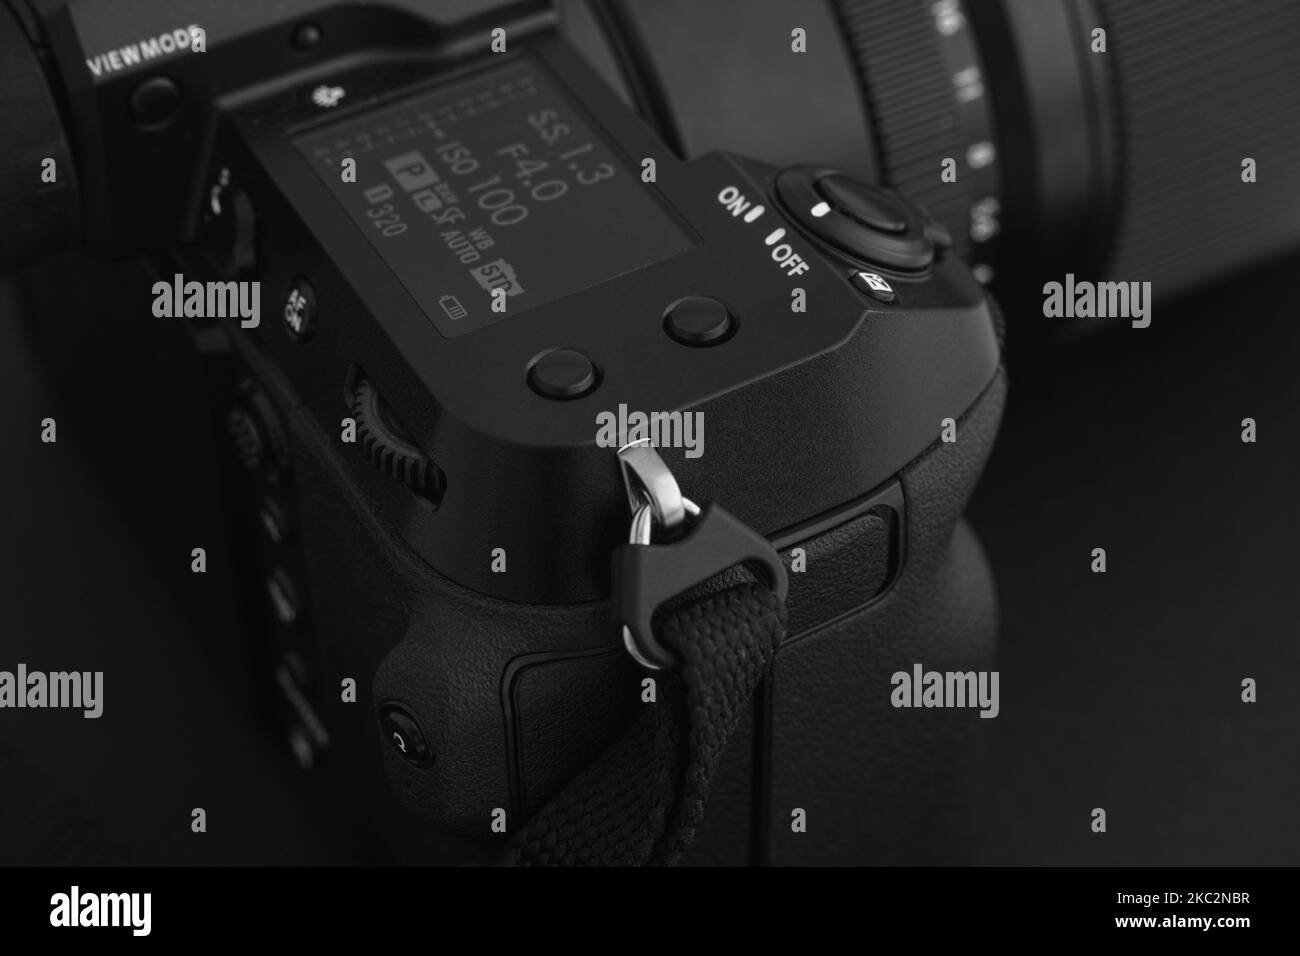 Tambov, Fédération de Russie - 19 juillet 2021 appareil photo de format moyen Fujifilm GFX 100S sur fond noir. Noir et blanc. Gros plan. Banque D'Images